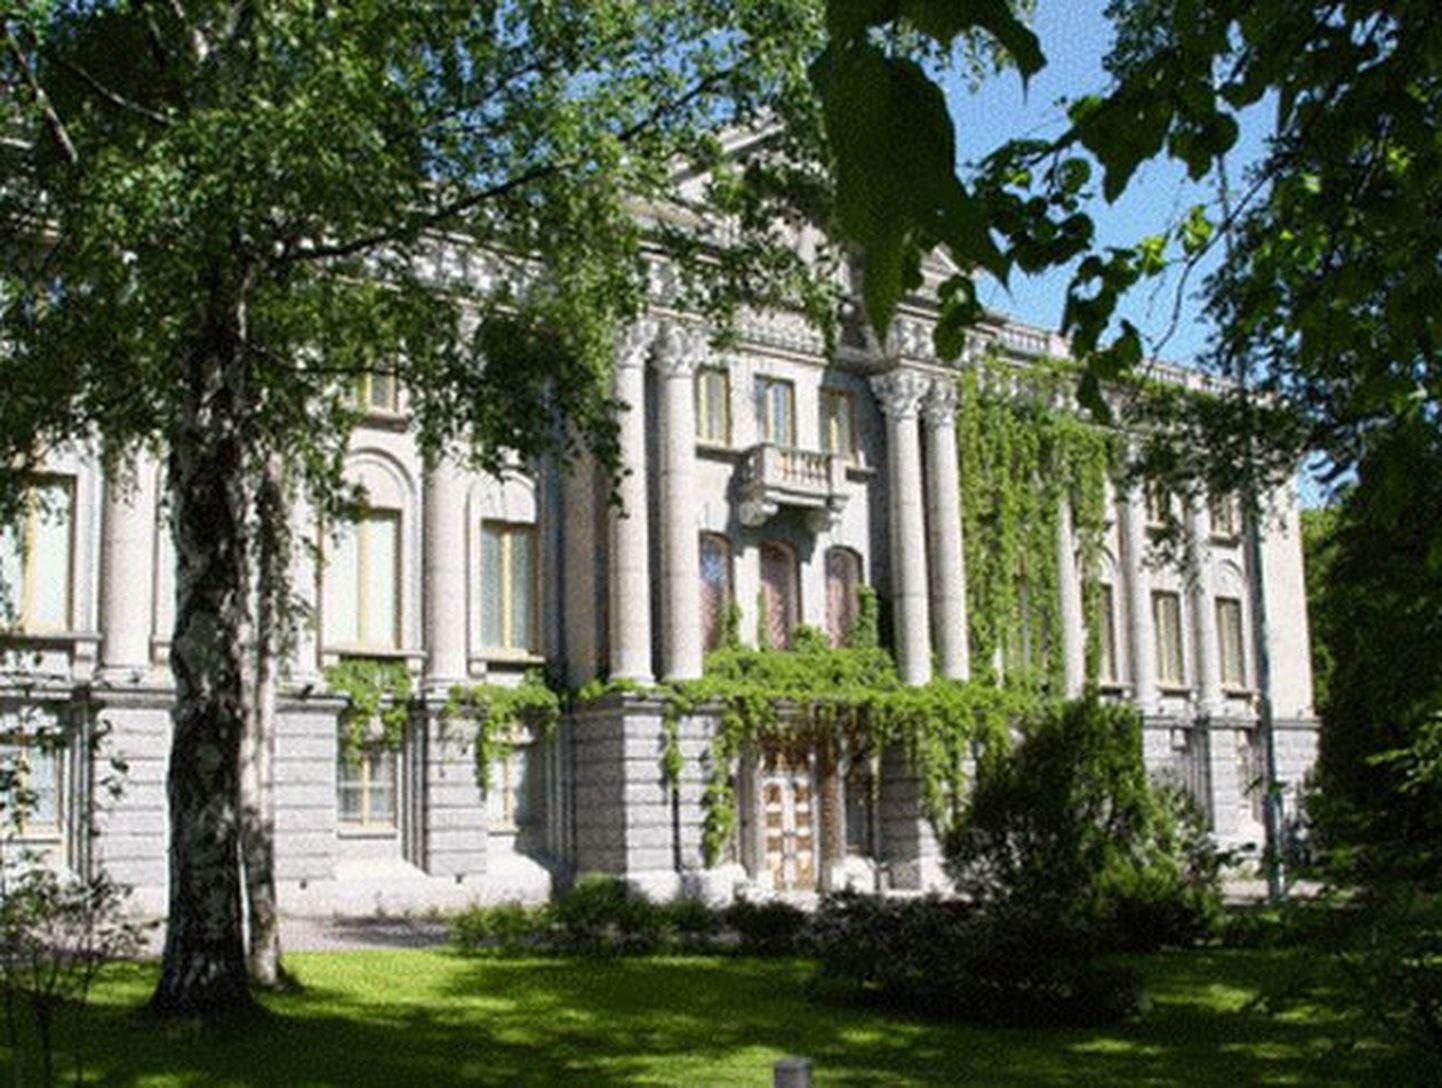 Venemaa suursaatkond Helsingis Kaivopuisto lähistel.